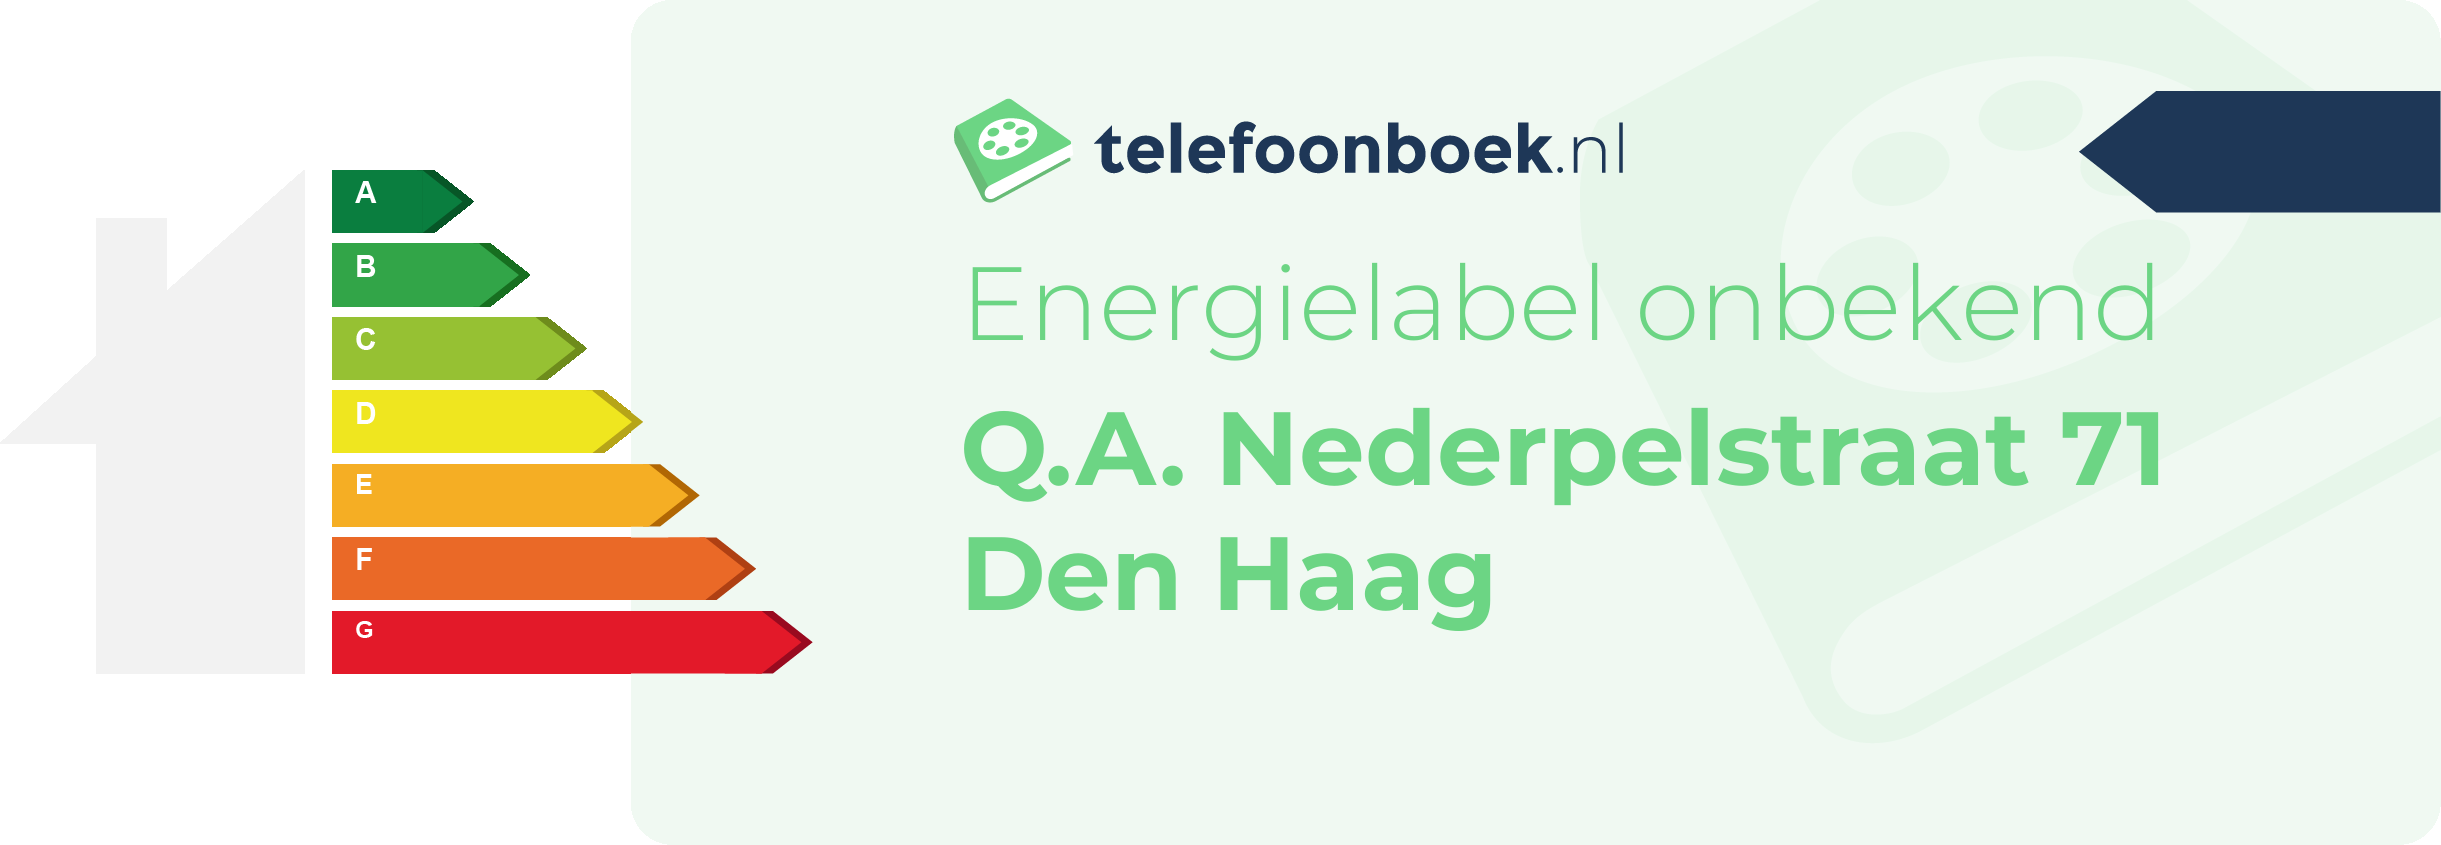 Energielabel Q.A. Nederpelstraat 71 Den Haag